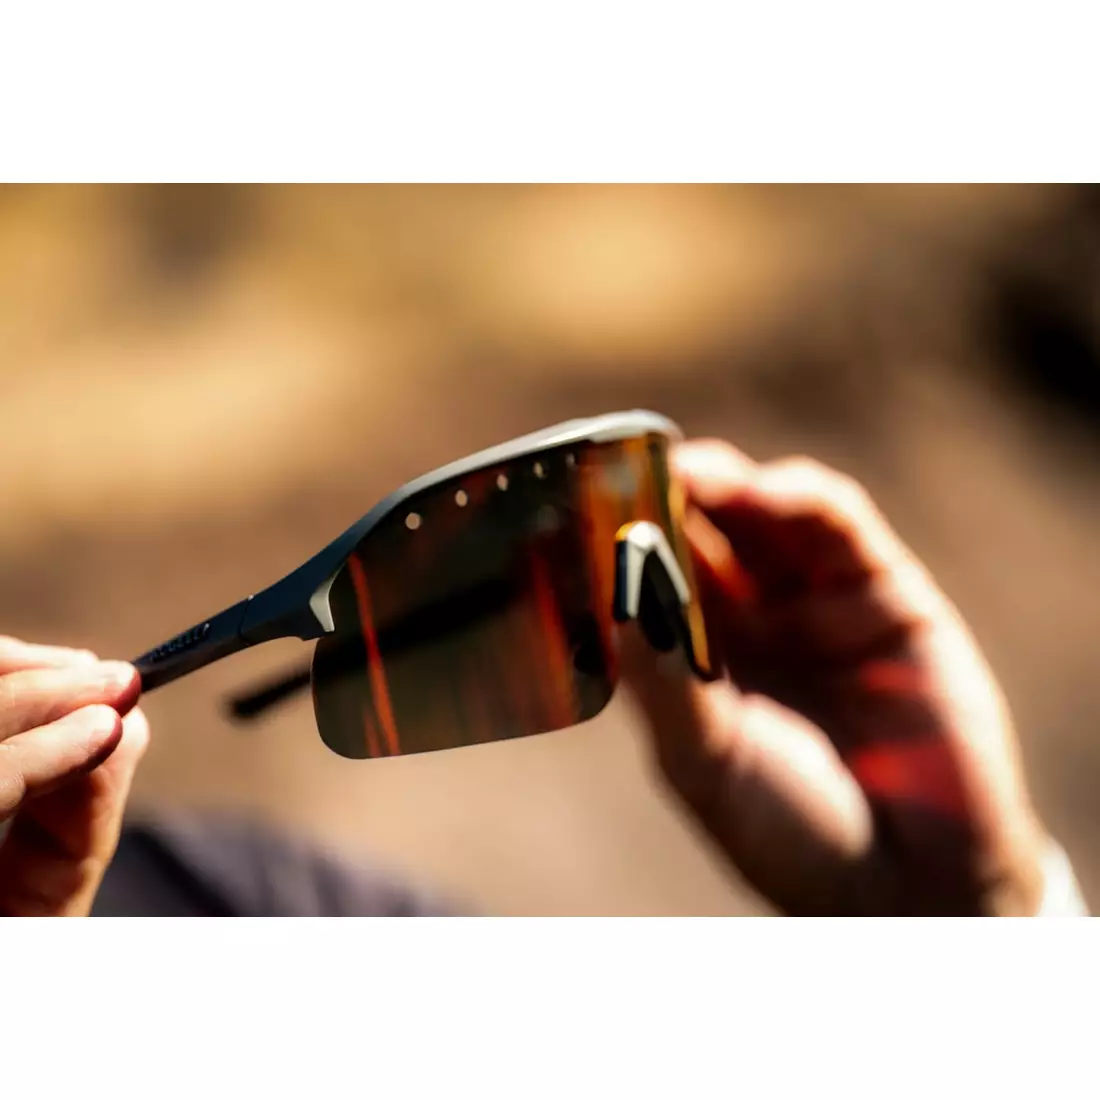 ROGELLI VENTRO Polarisierte Sportbrille mit Wechselgläsern, grau-kastanienbraun